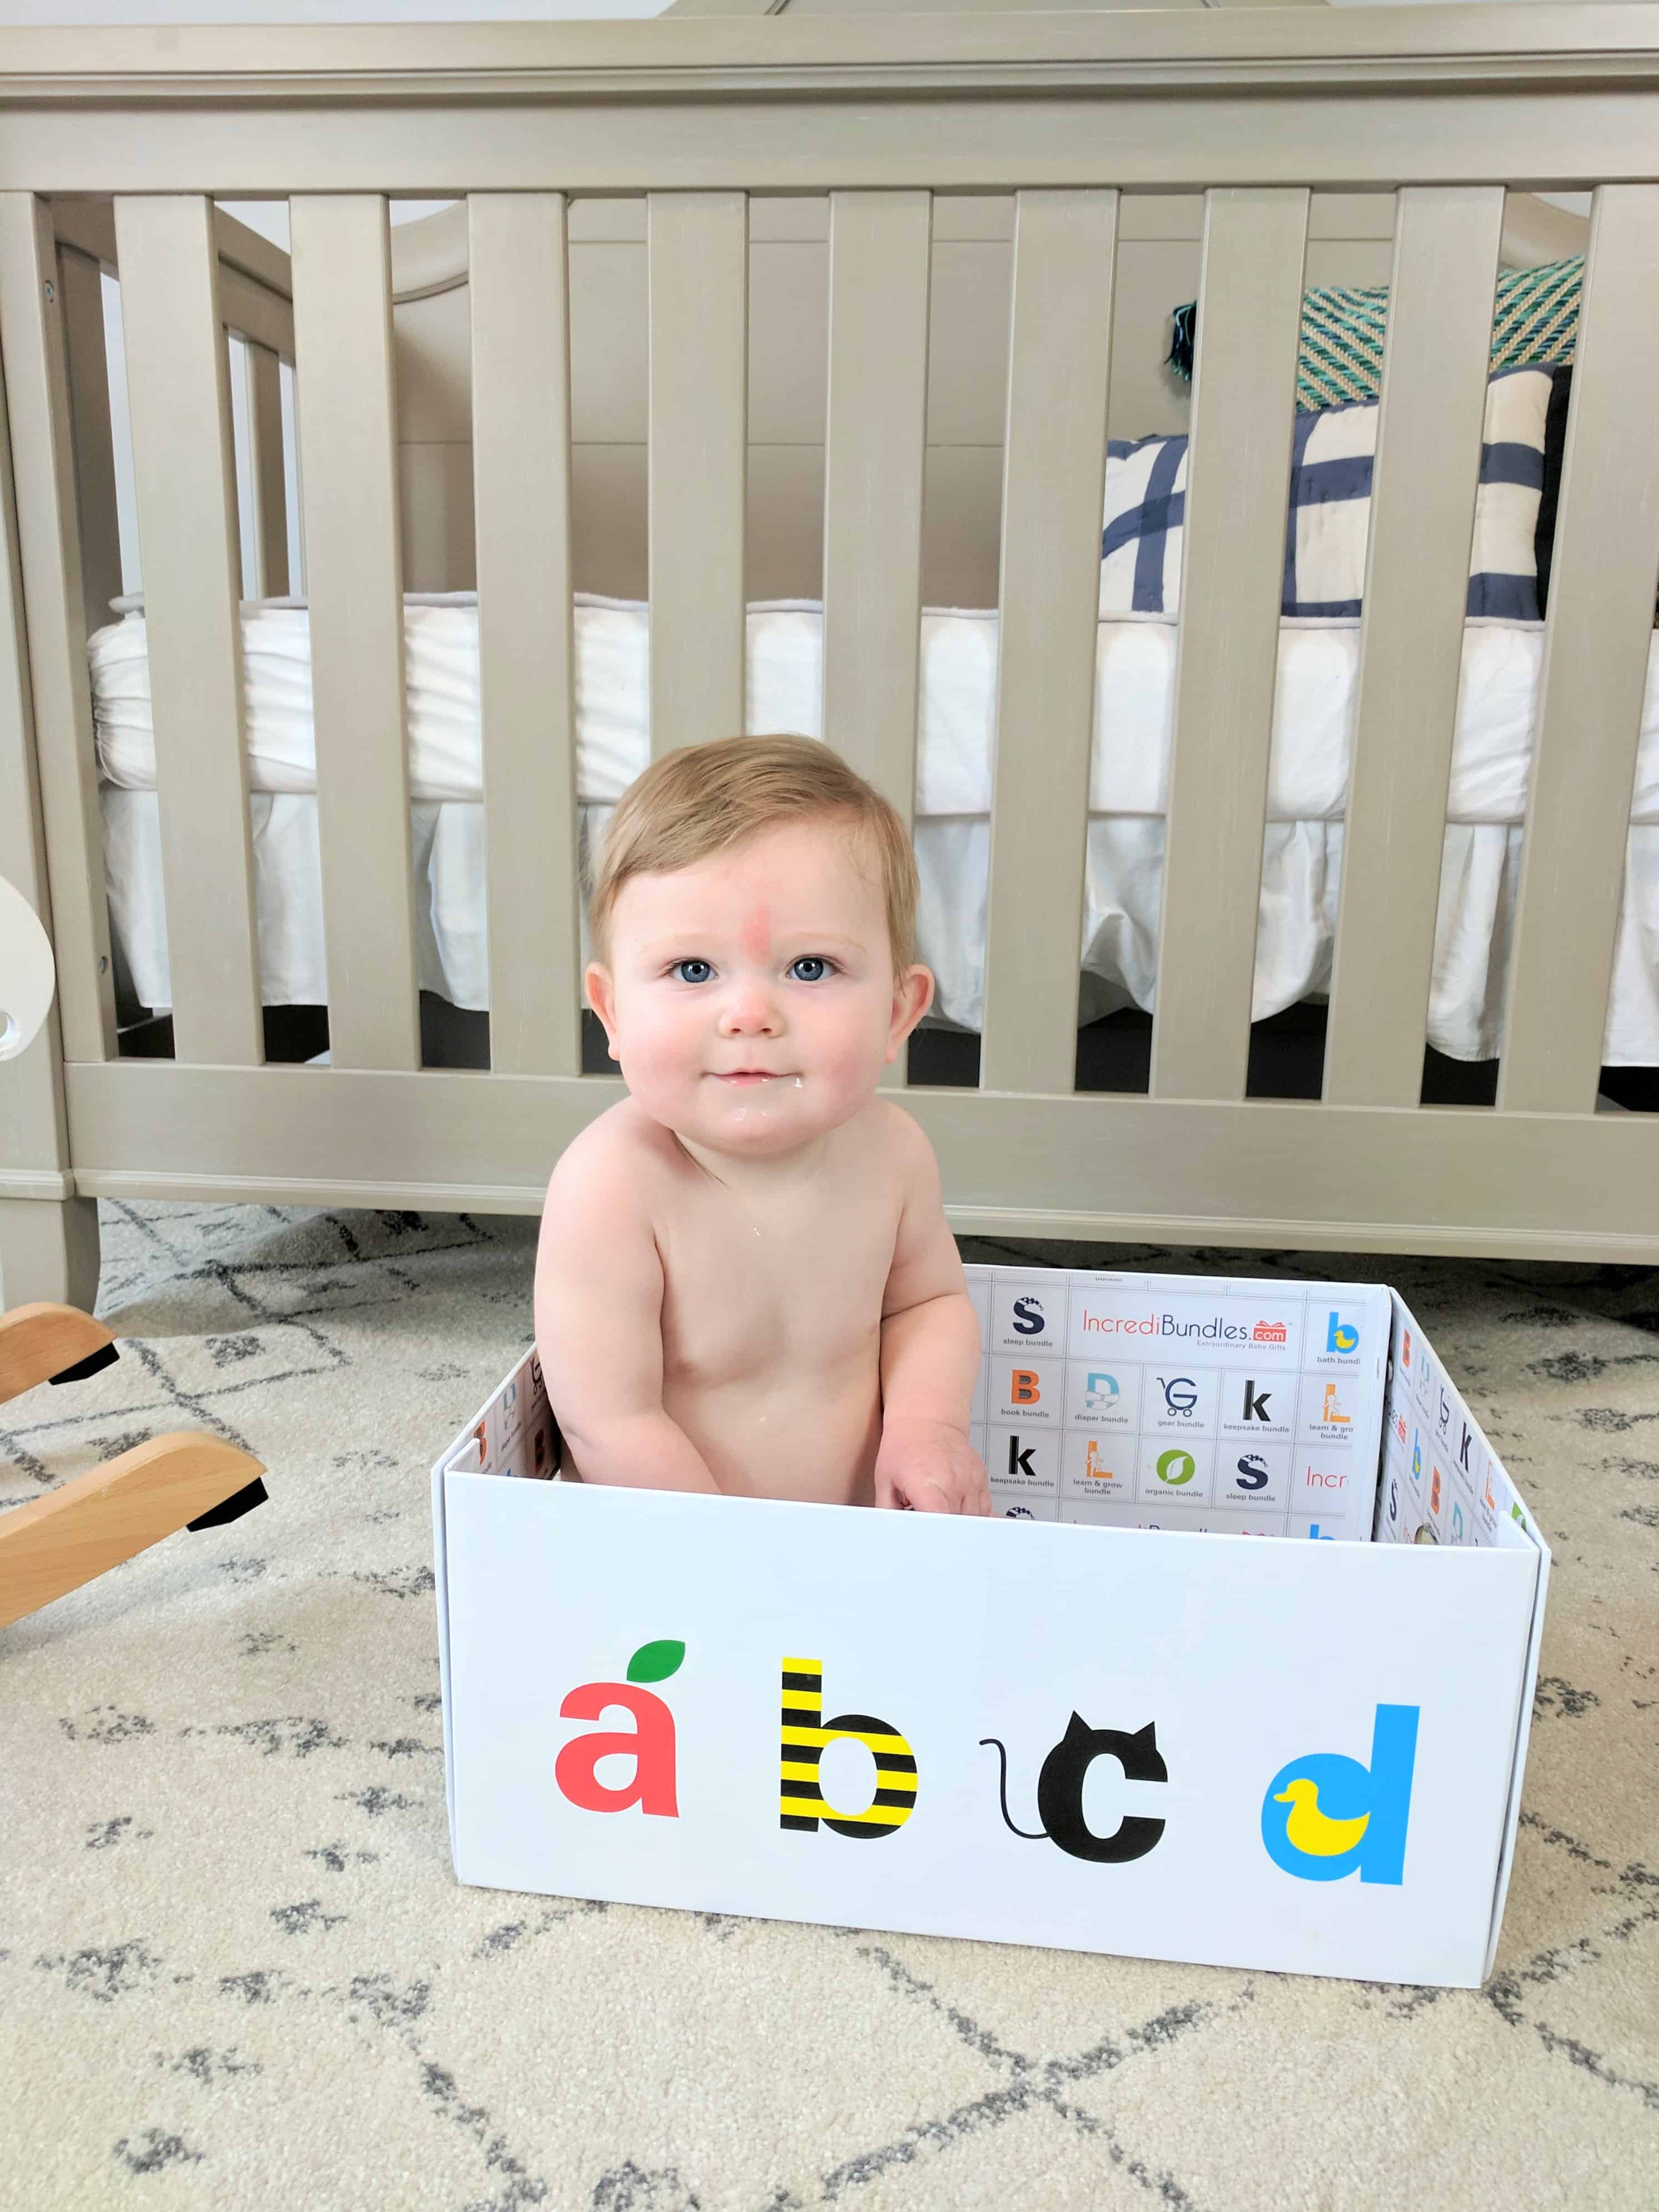 Baby in Incredibundles box